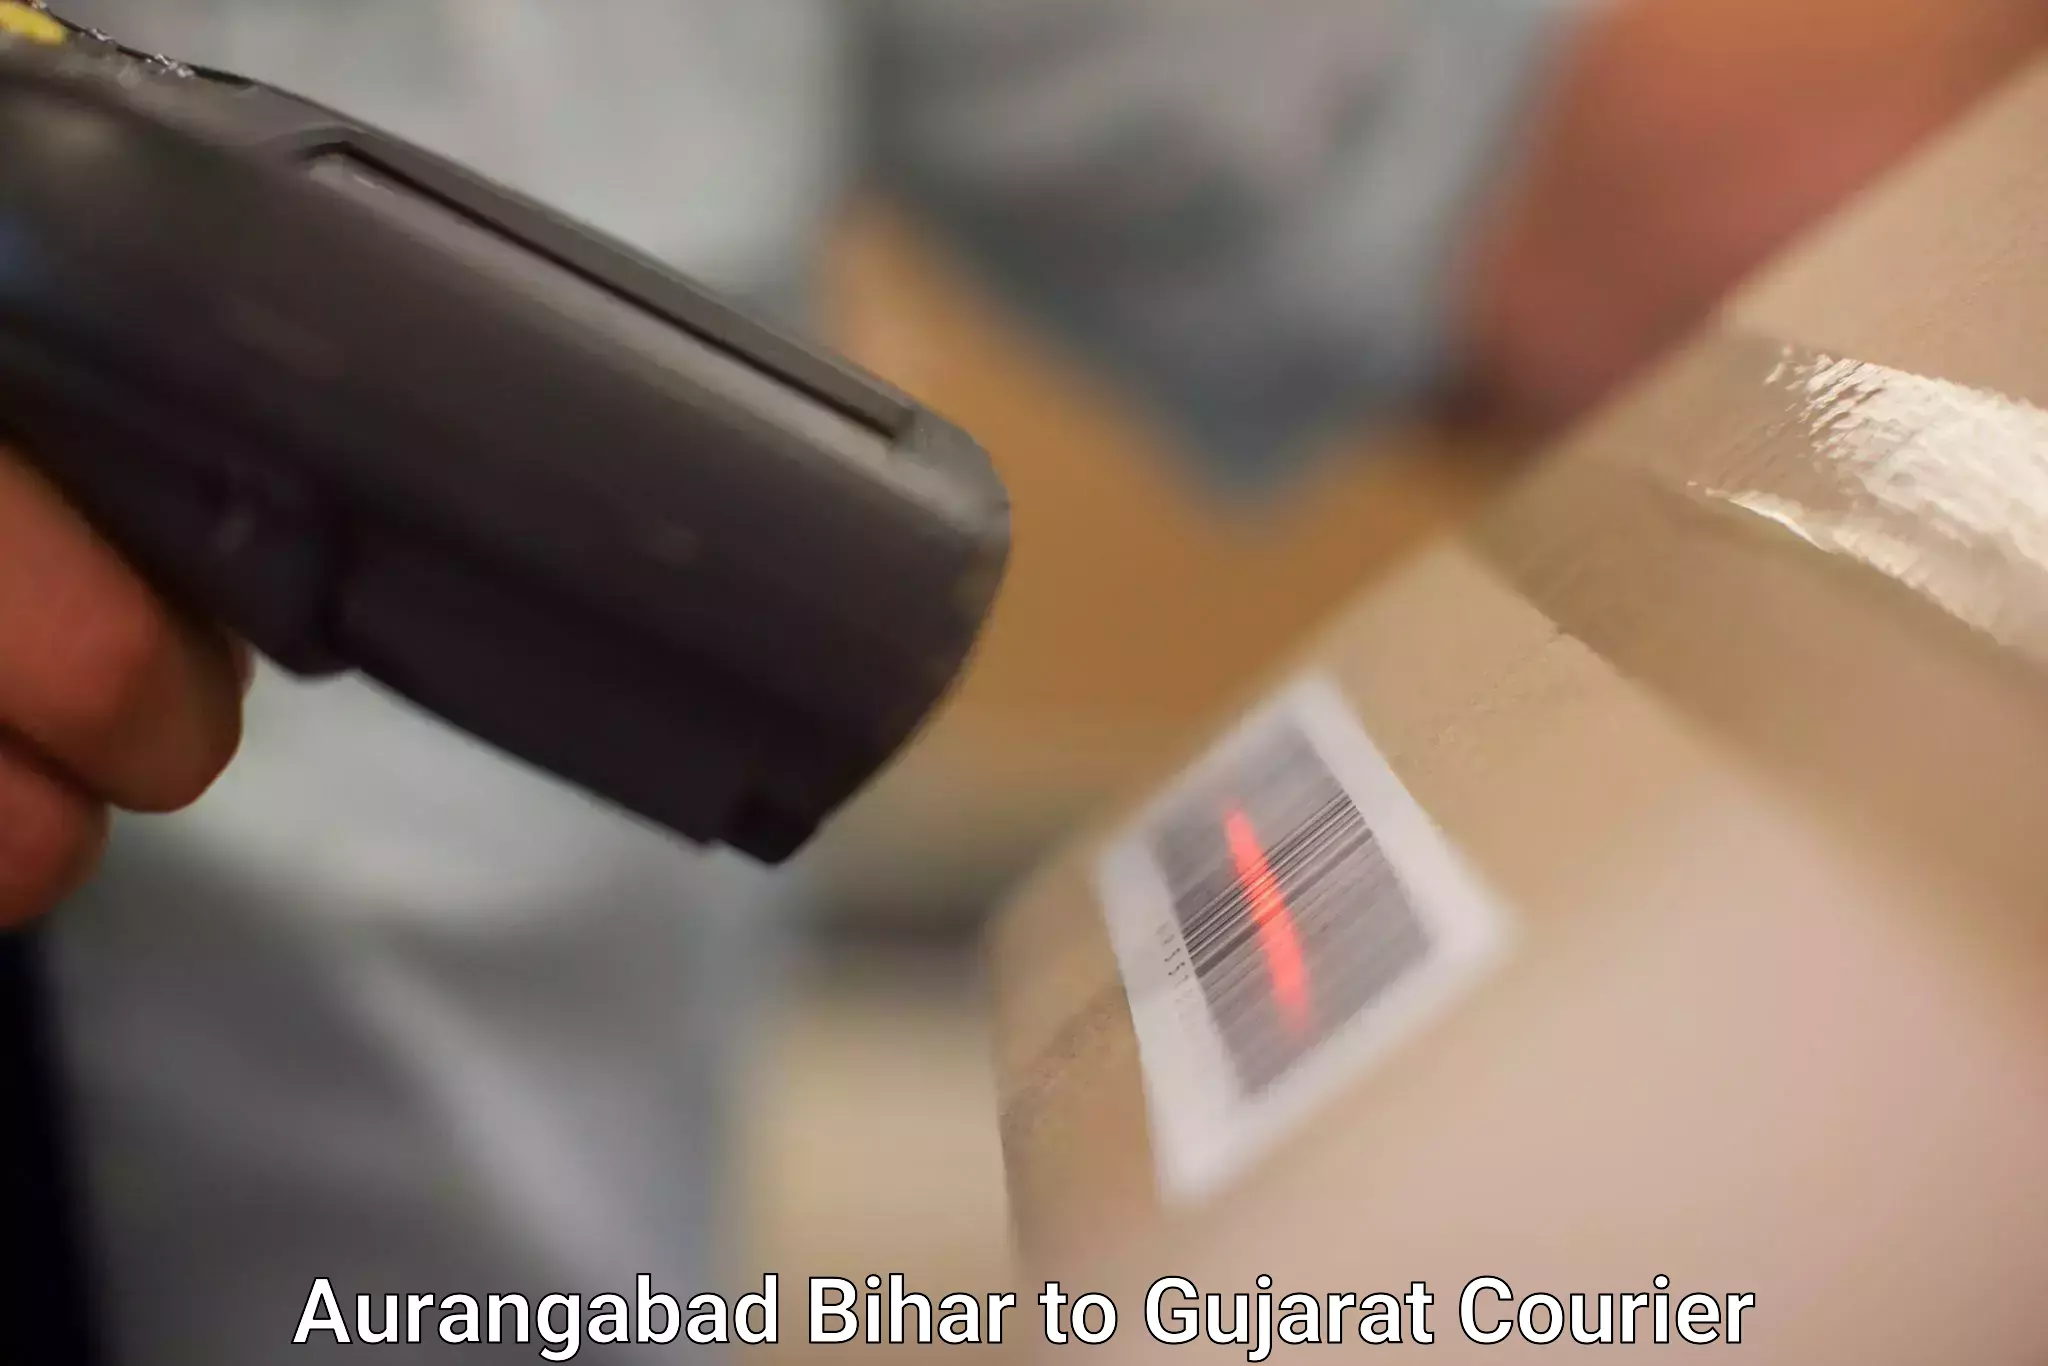 Affordable parcel service Aurangabad Bihar to Gondal